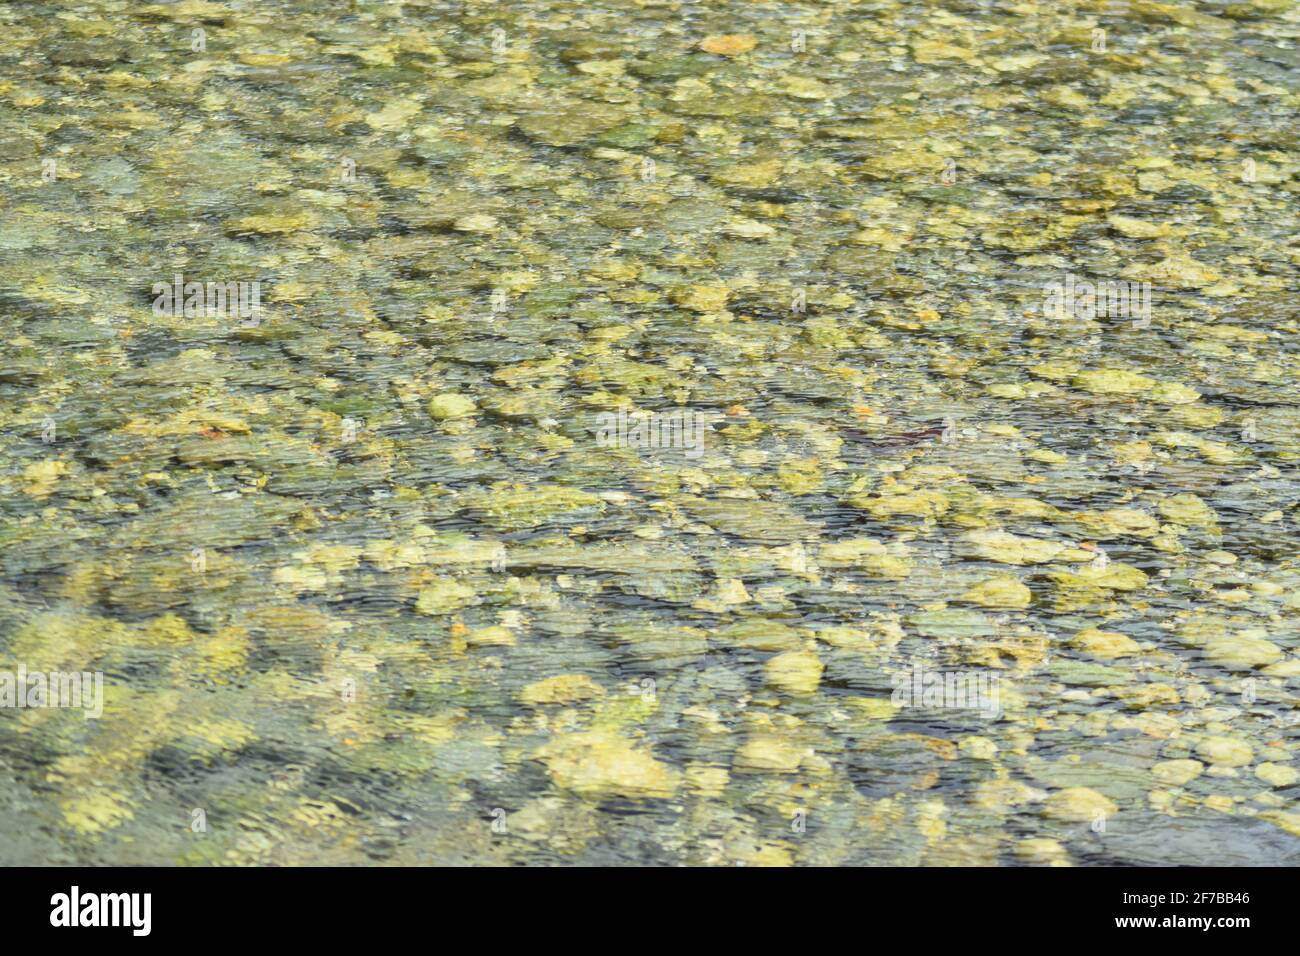 Rocks in Water landscape Stock Photo